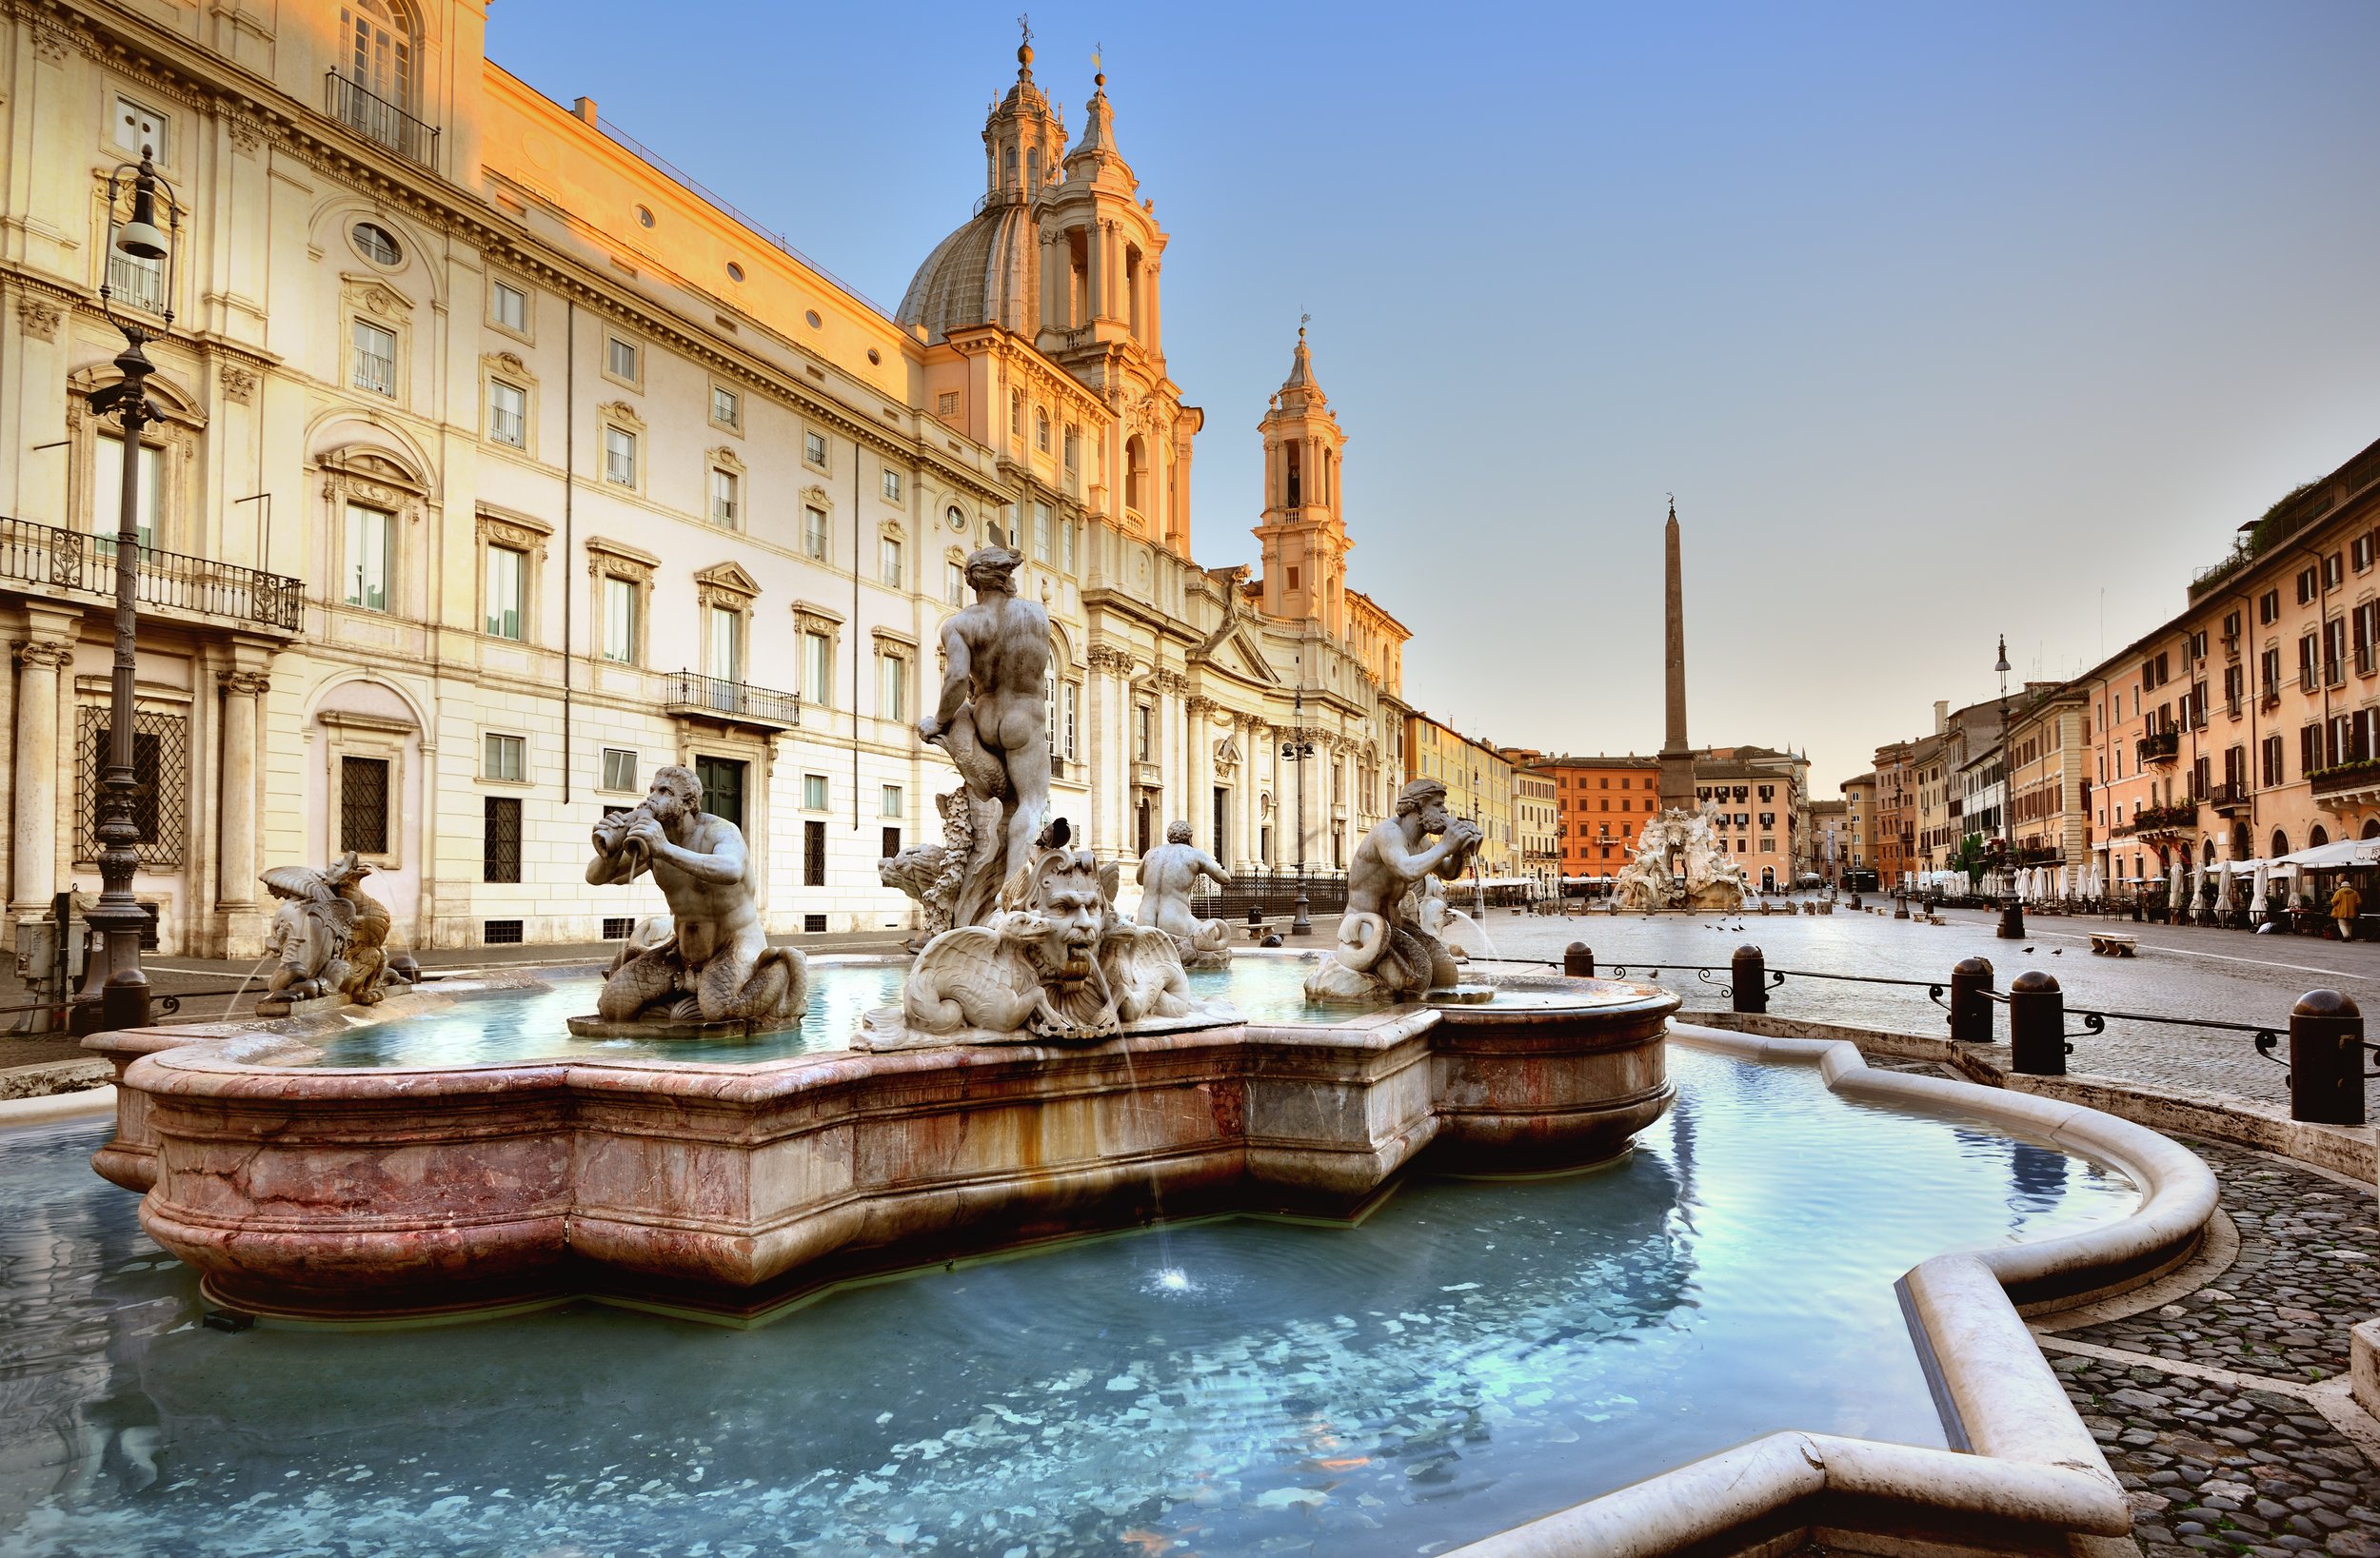 D-Italy-Rome-Piazza Navona and Fontana del Moro.jpeg